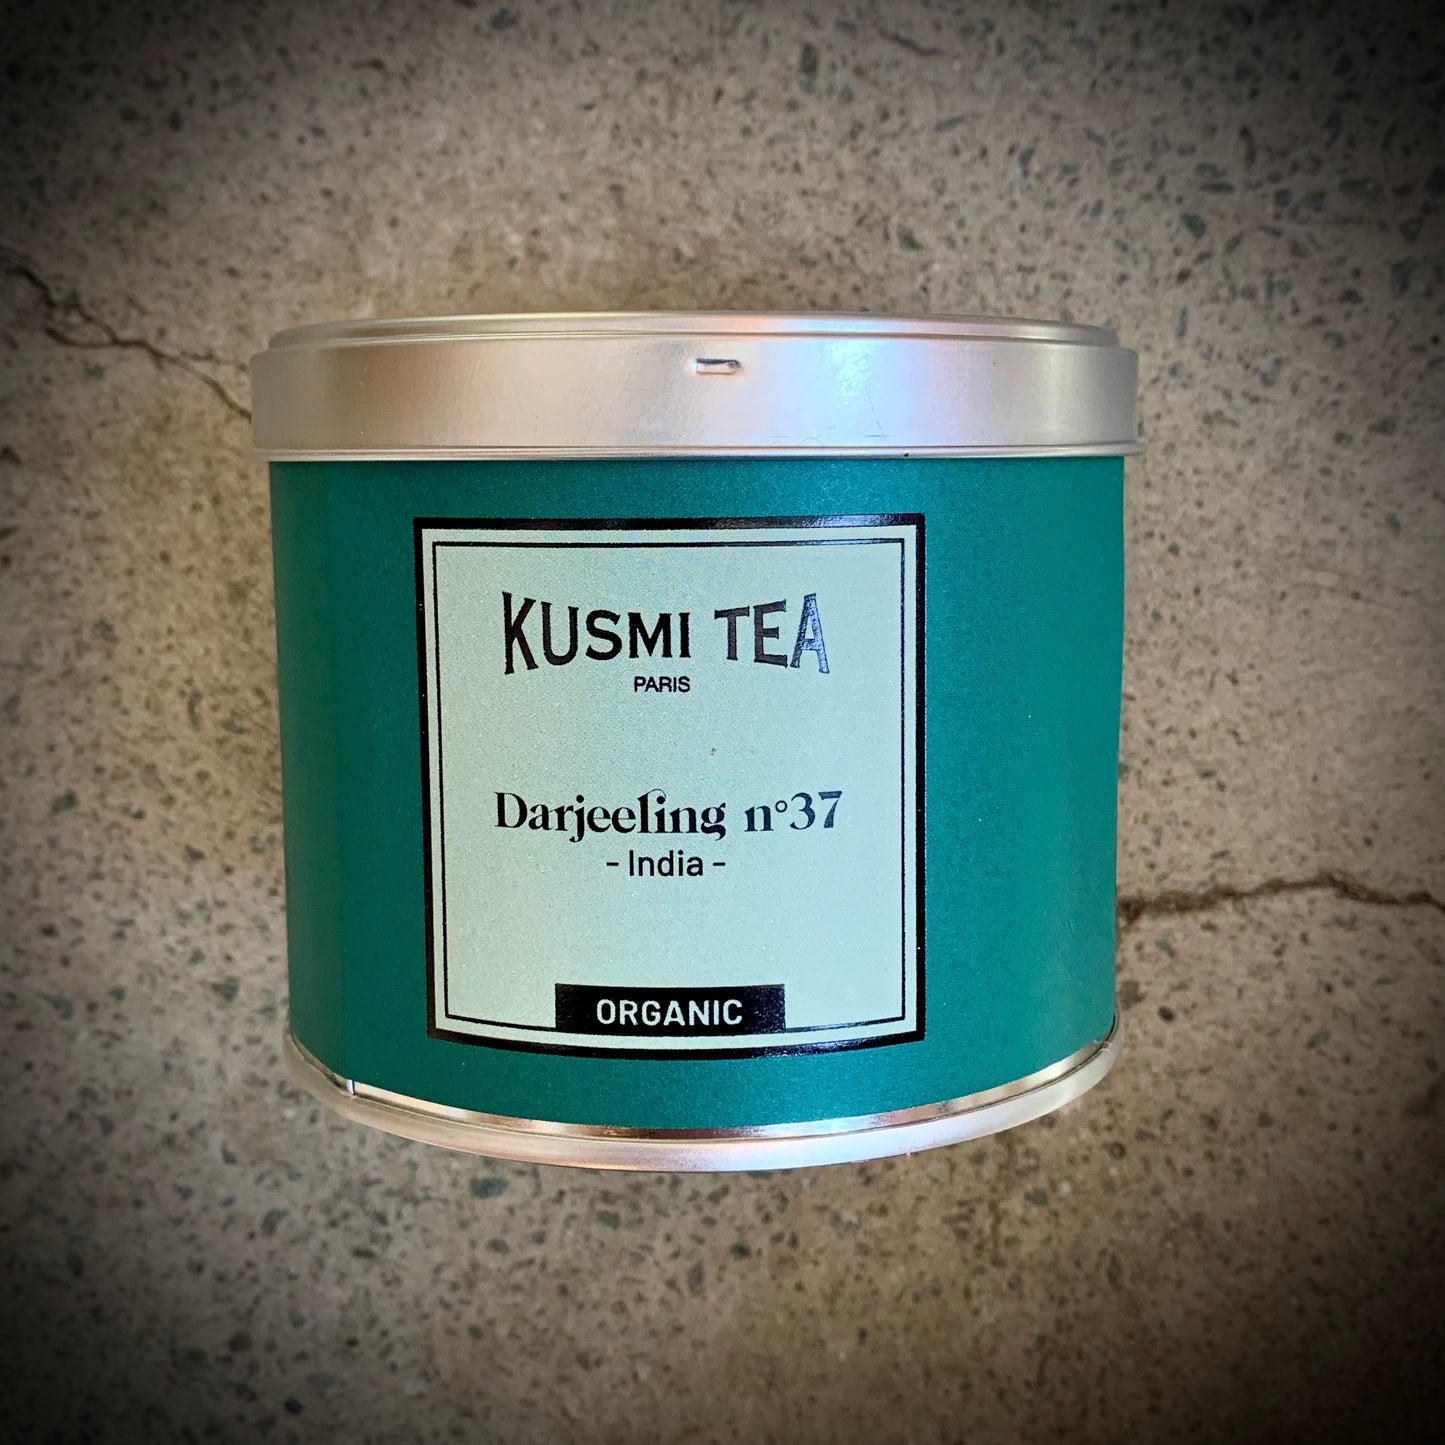 Kusmi, Darjeeling No 37, Organic tea - 100g tin